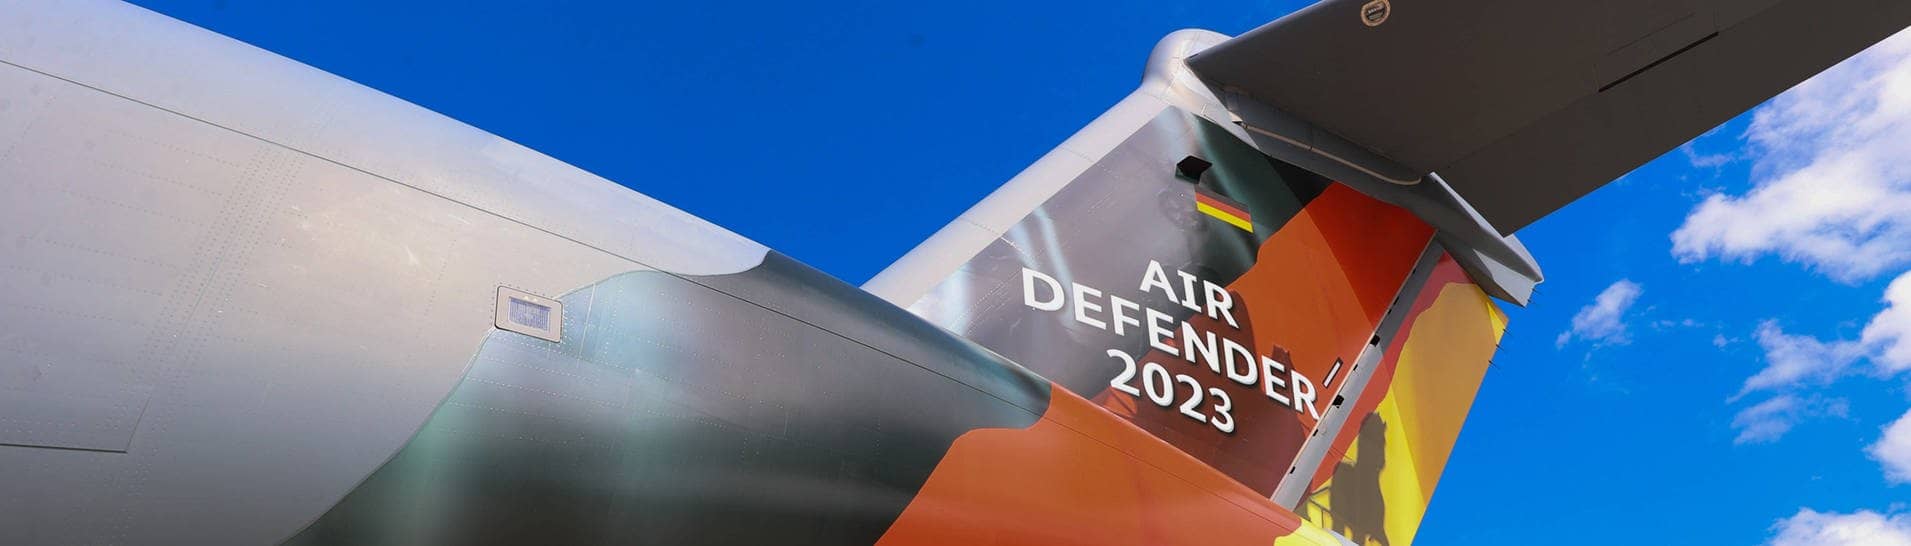 „Air Defender 23“ und eine Deutschlandflagge sind auf das Heckleitwerk eines Militärflugzeugs gedruckt (Foto: IMAGO, IMAGO/localpic)